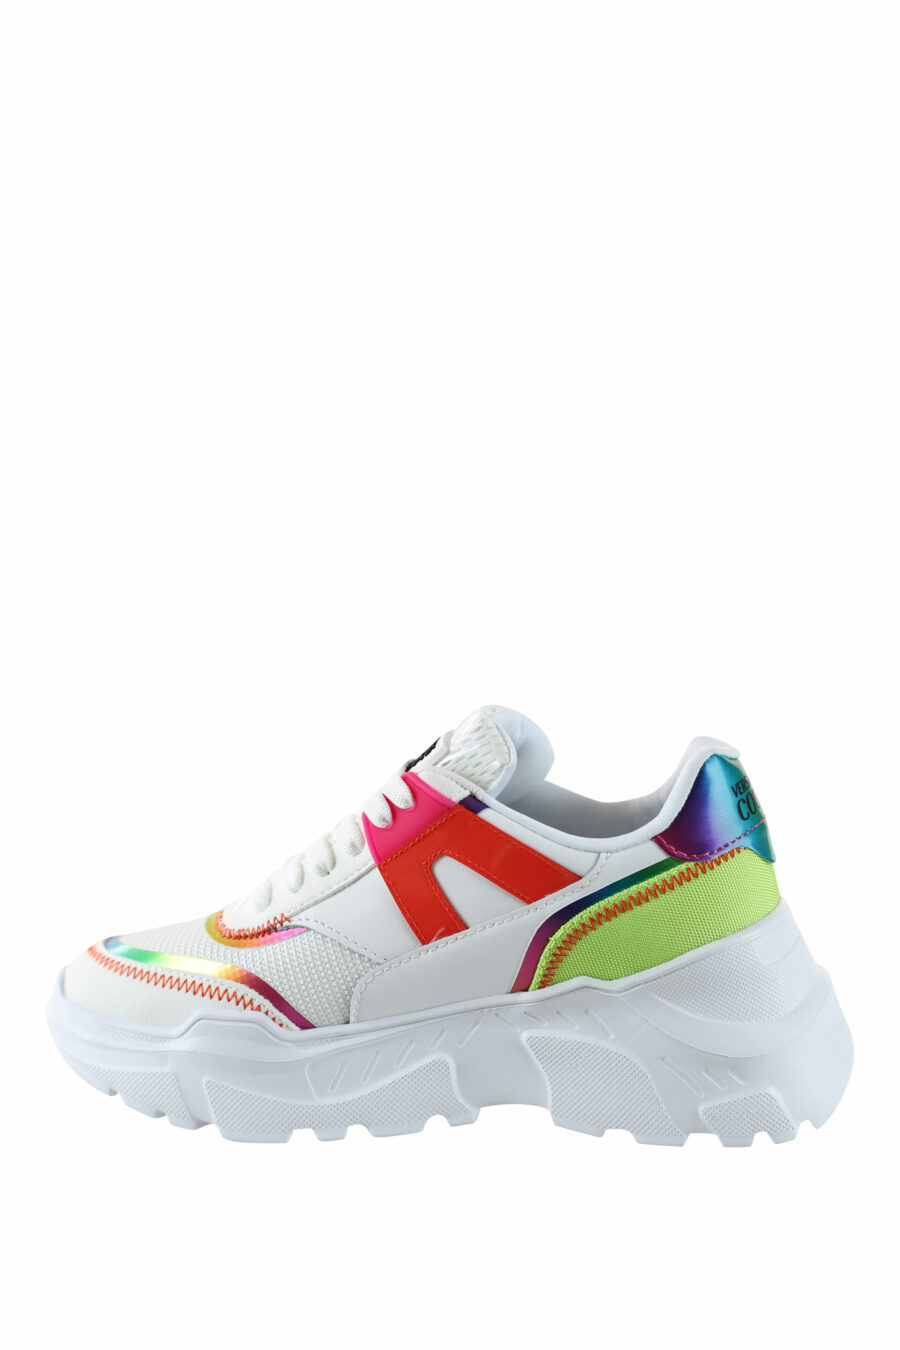 Zapatillas blancas multicolor reflectivo - IMG 4496